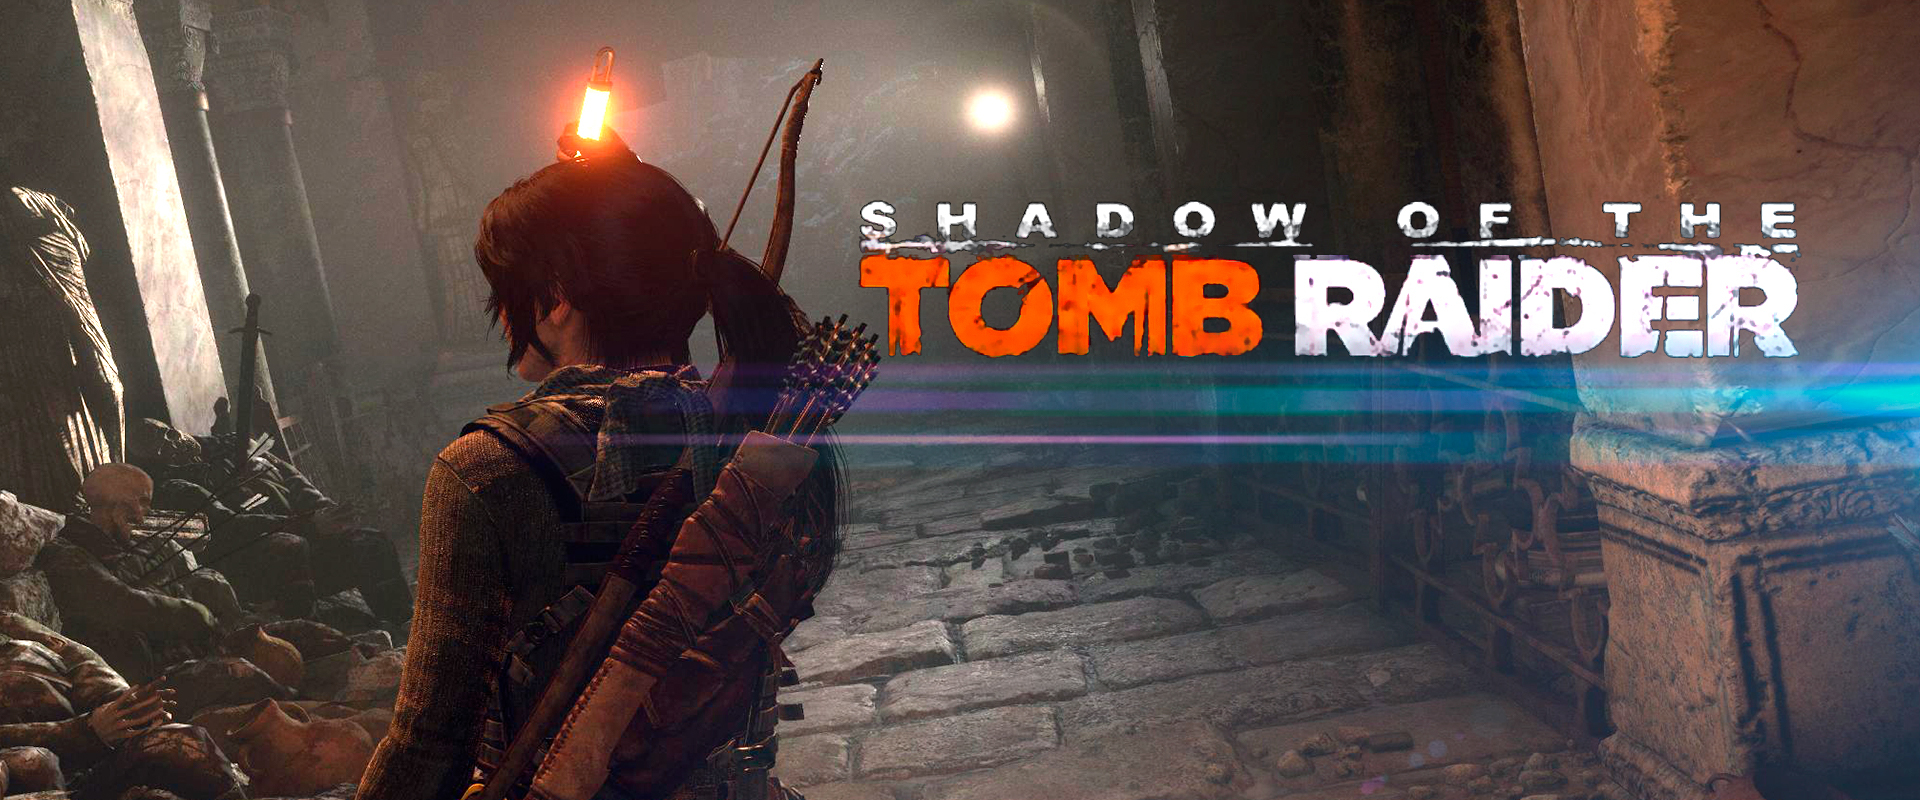 Játssz előbb a Shadow of the Tomb Raiderrel!